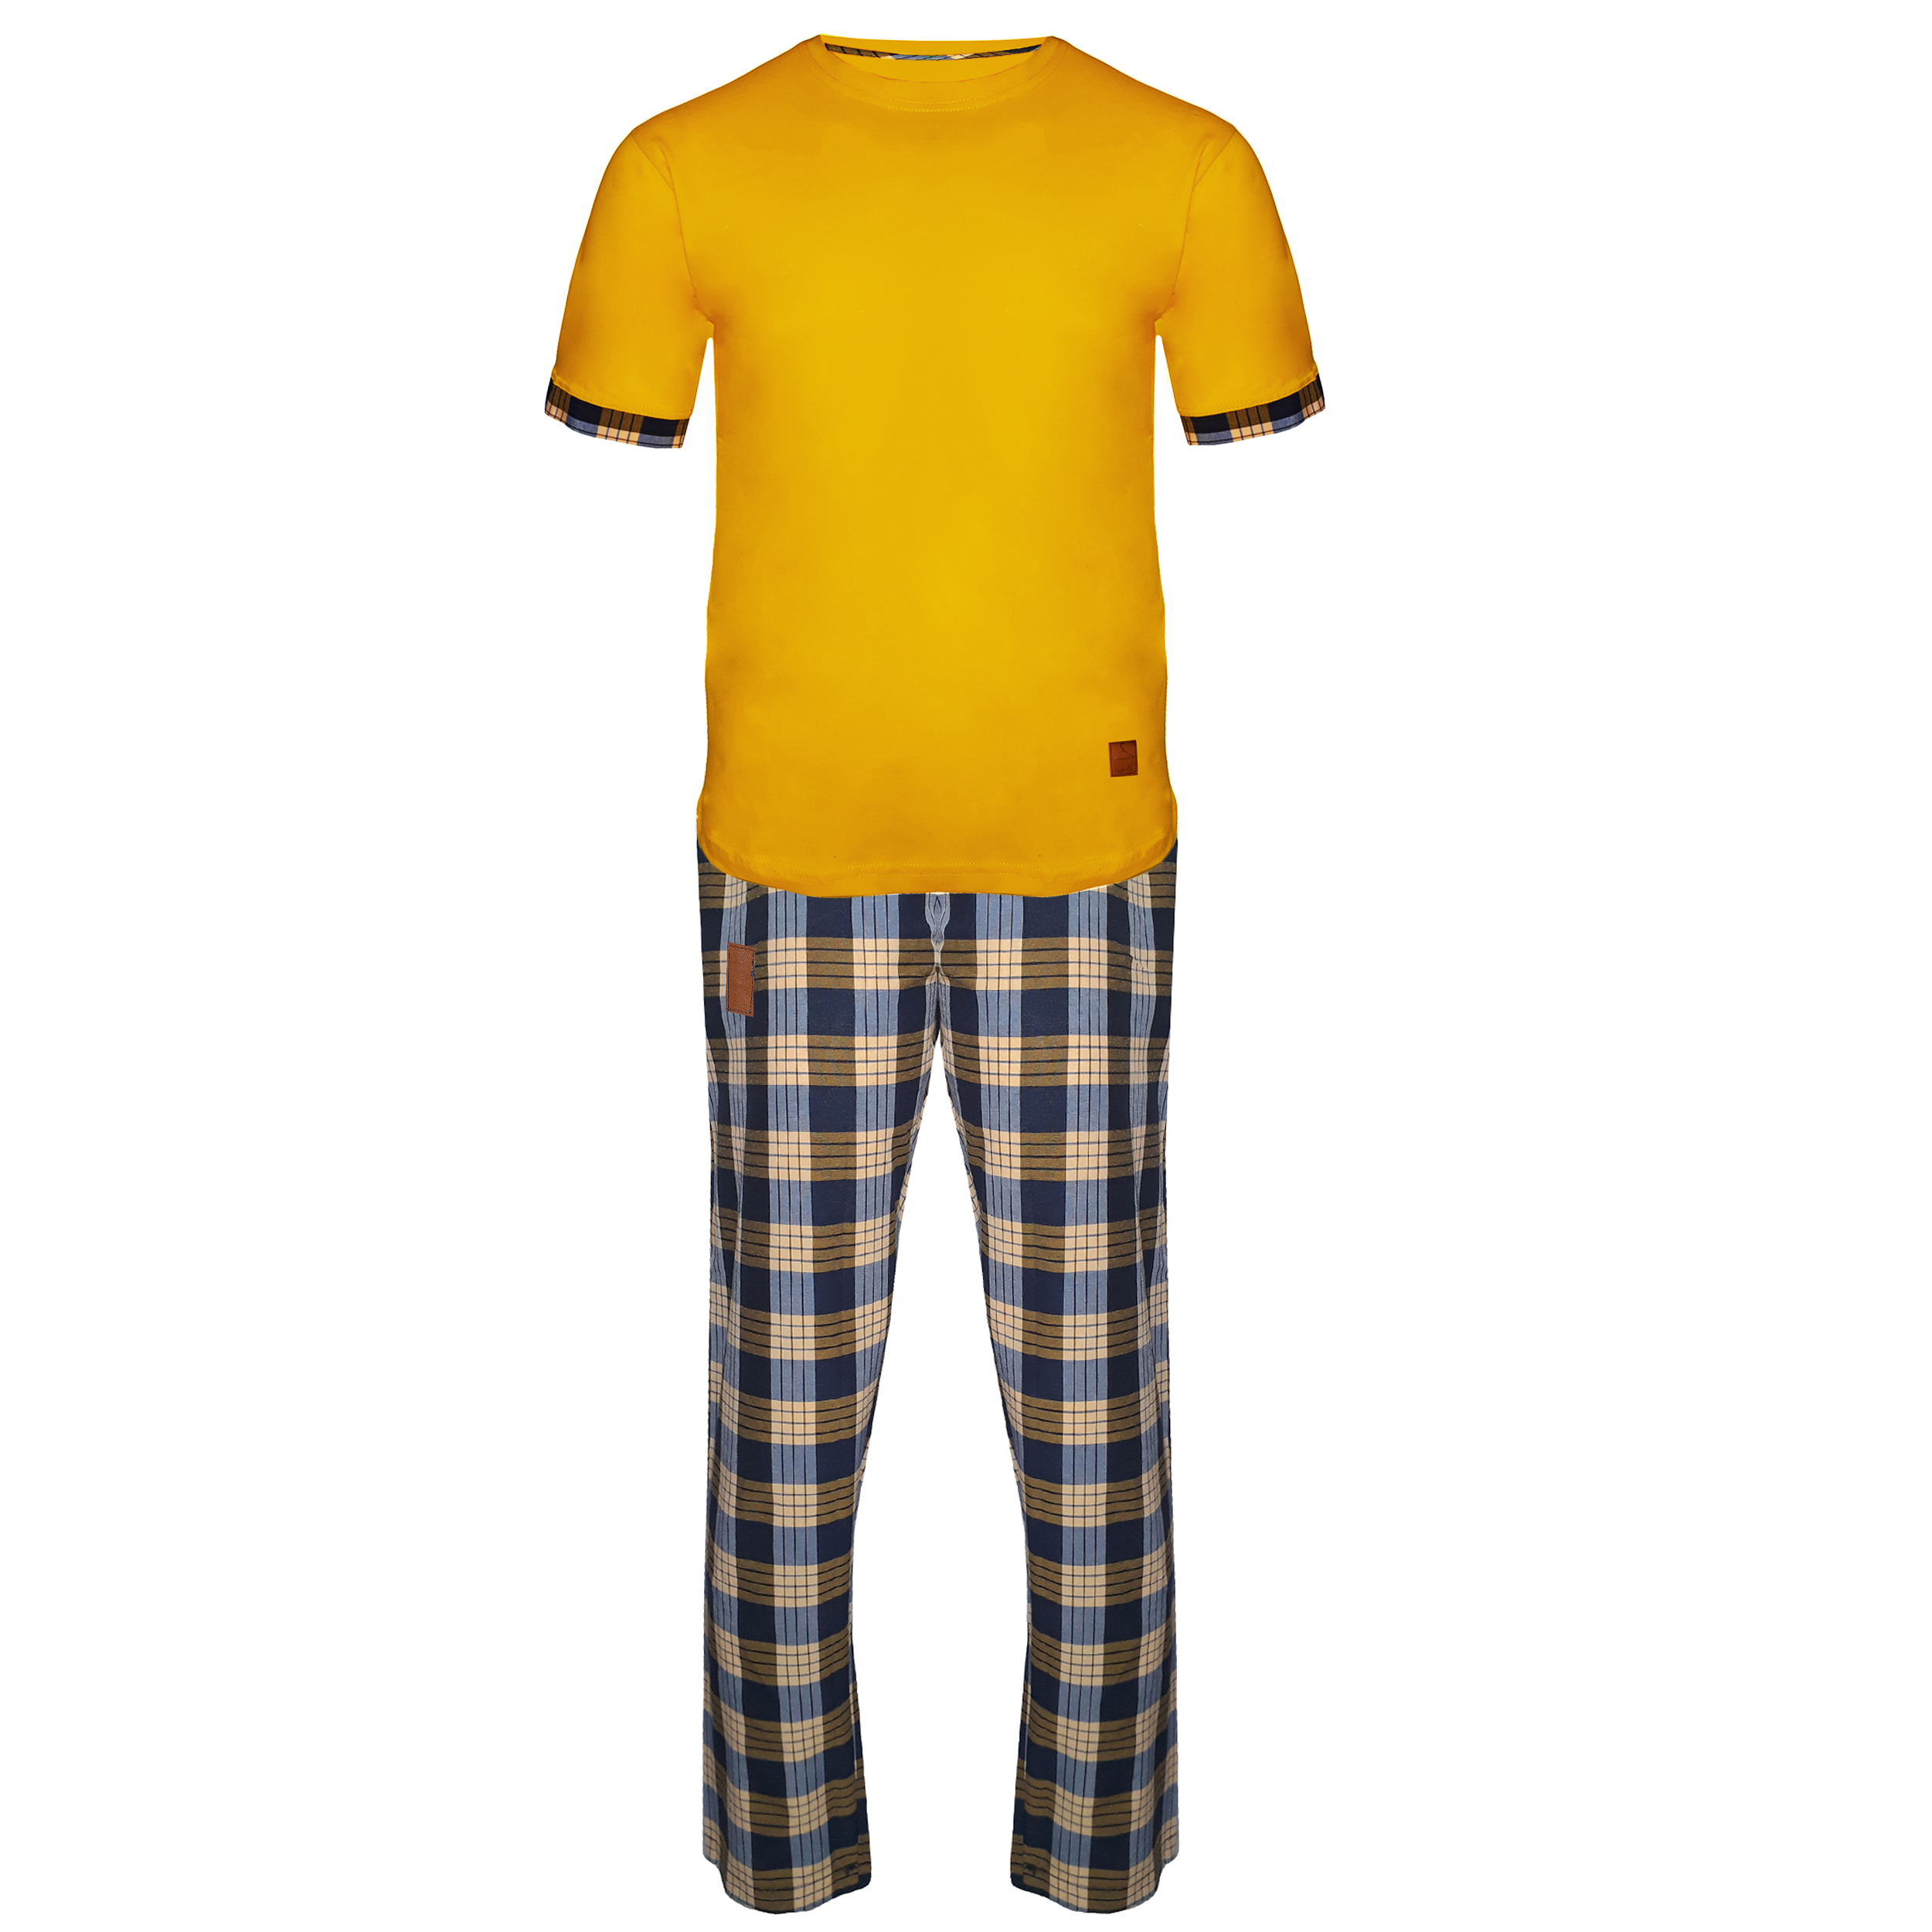 ست تی شرت و شلوار مردانه لباس خونه مدل طه 991130 کد 4560259 رنگ زرد